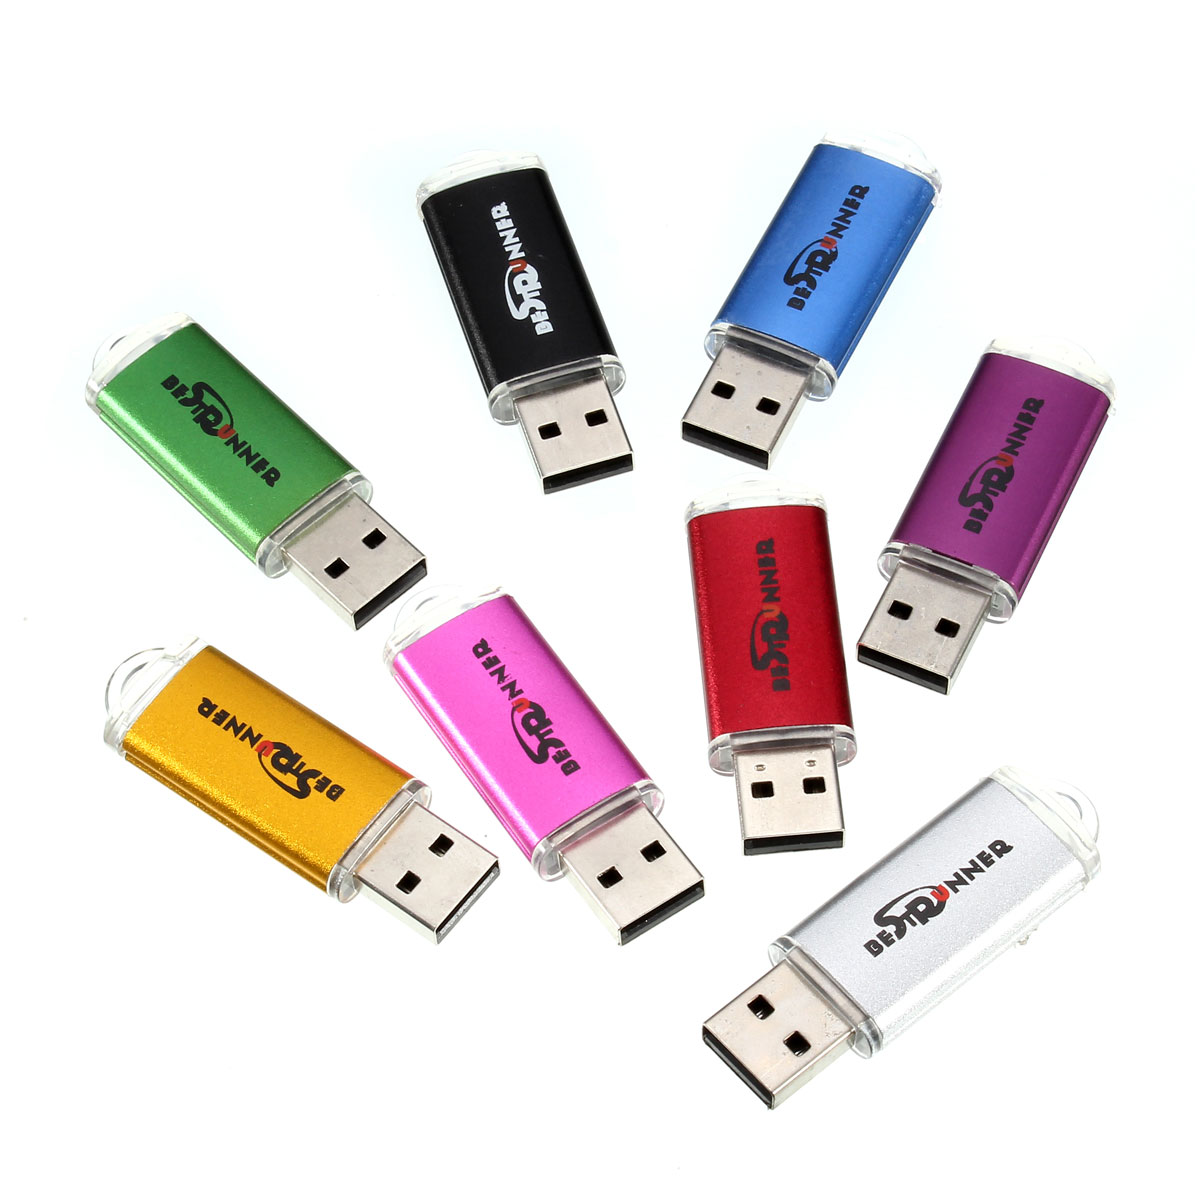 Bestrunner 32GB USB 2.0 Flash Drive Candy Color Memory U Disk 21